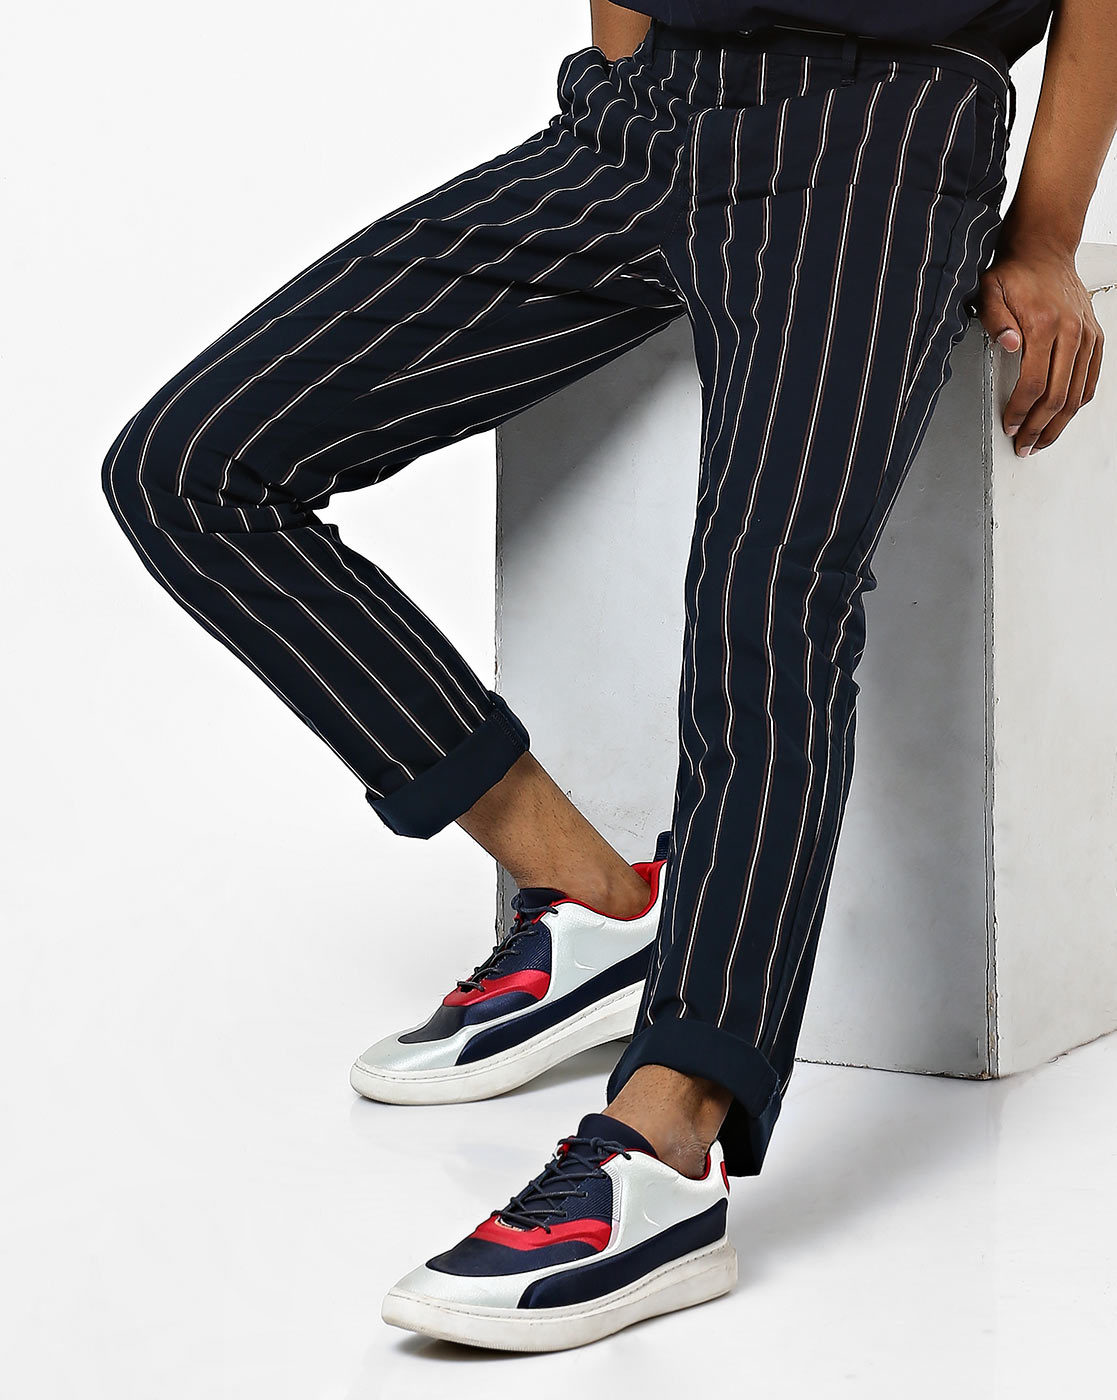 19 个最佳 Striped pants men style 点子